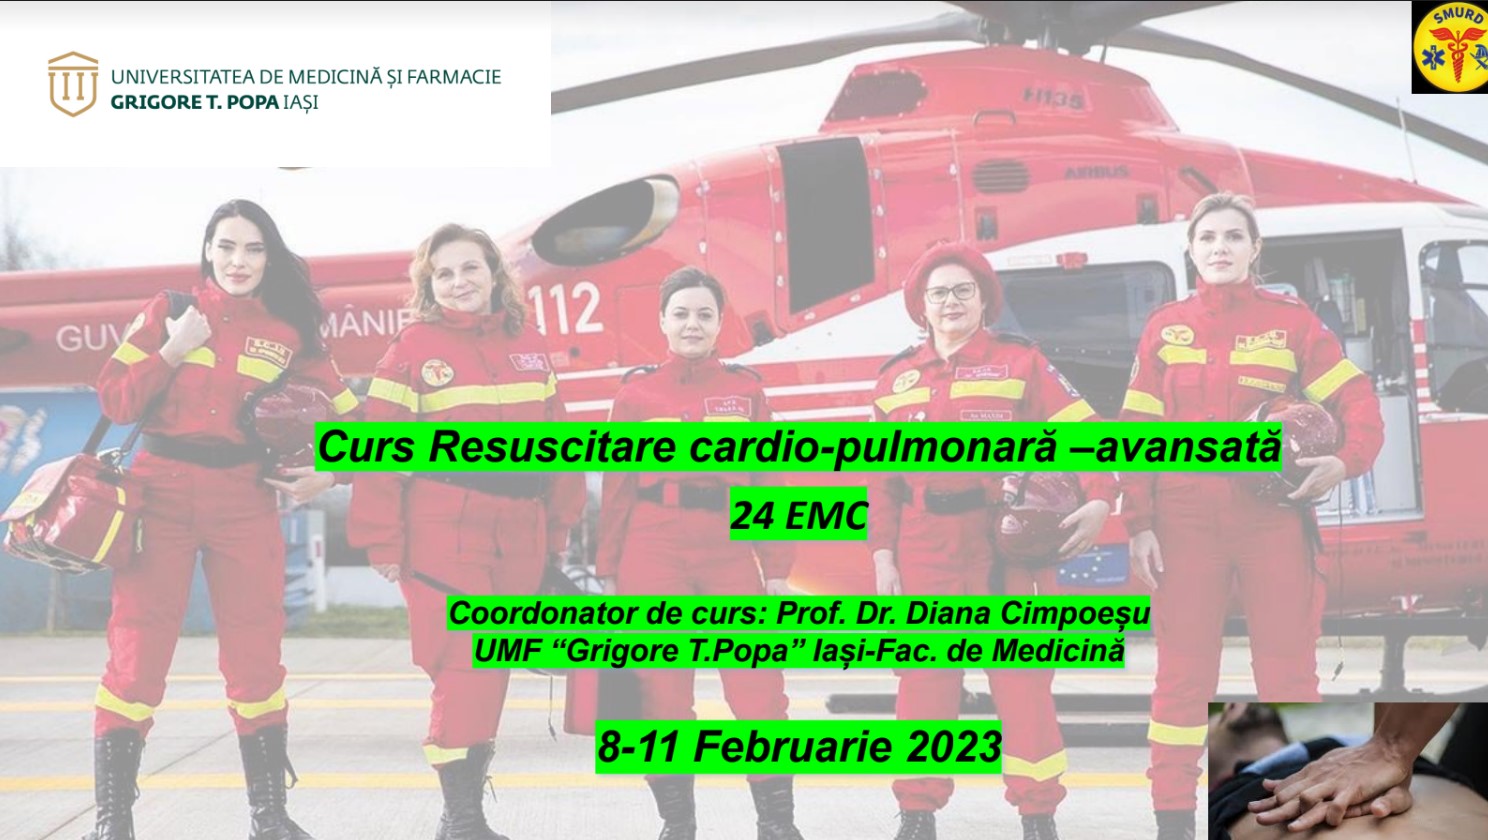 Curs resuscitare cardio-pulmonara-avansata – 24 EMC – 8-11 Feb 2023